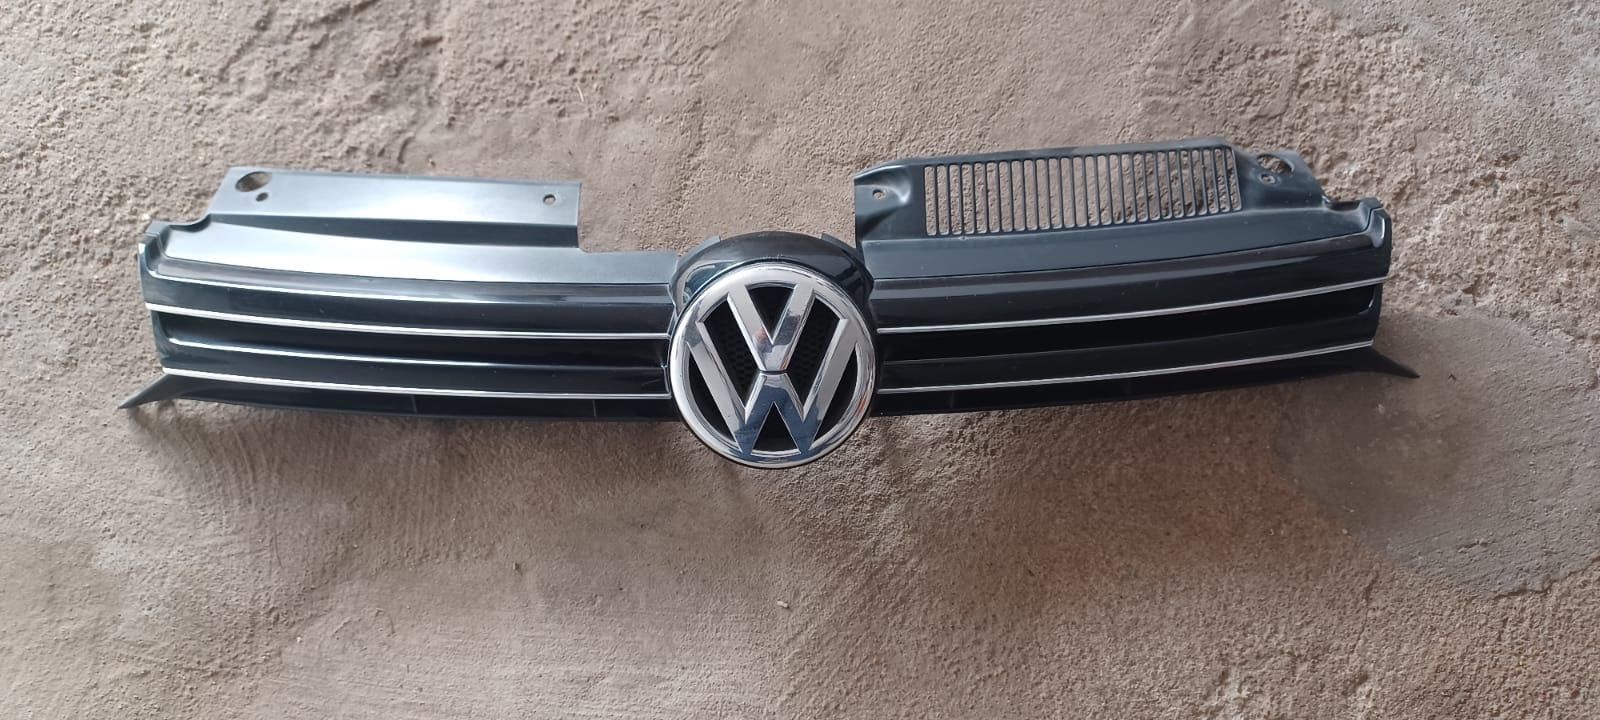 Lampy przednie VW Golf VI - Komplet! Wersja EU!